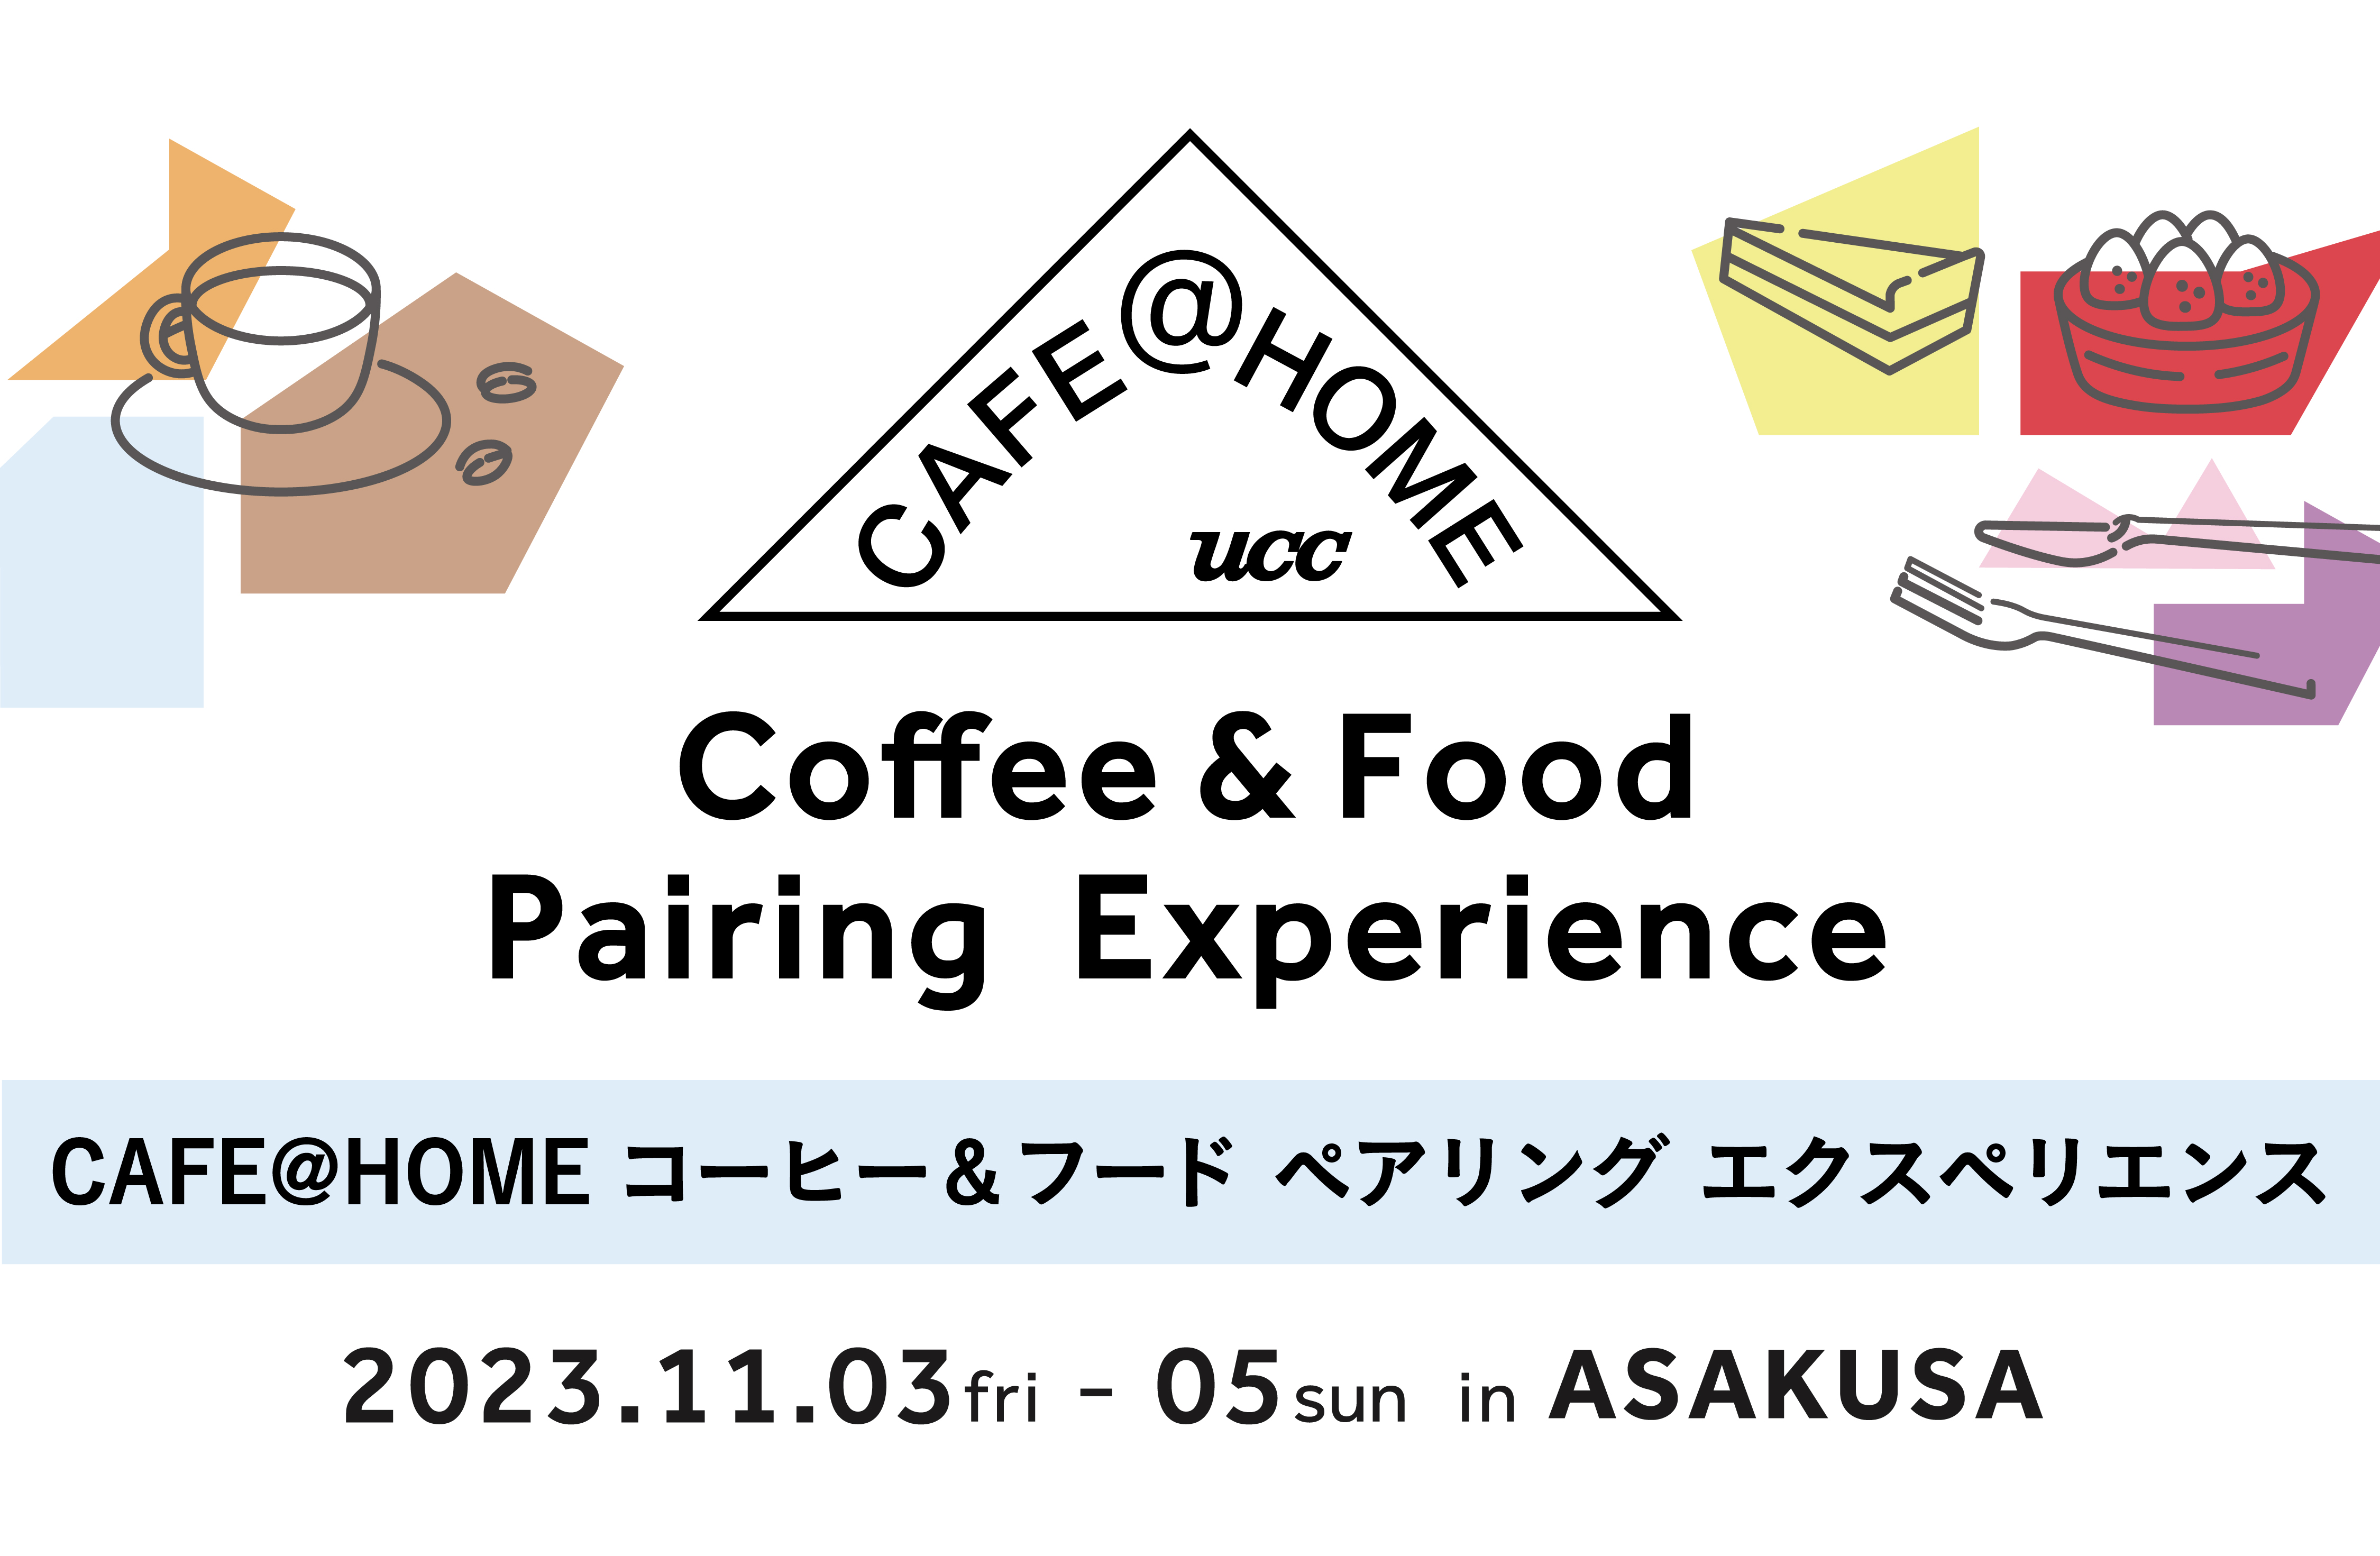 10月新発売のコーヒーに合わせた、特別なスイーツとのペアリングが楽しめる期間限定イベント「CAFE@HOME コーヒー&フード ペアリング エクスペリエンス」が11月3日より浅草に3日間オープンのサブ画像1